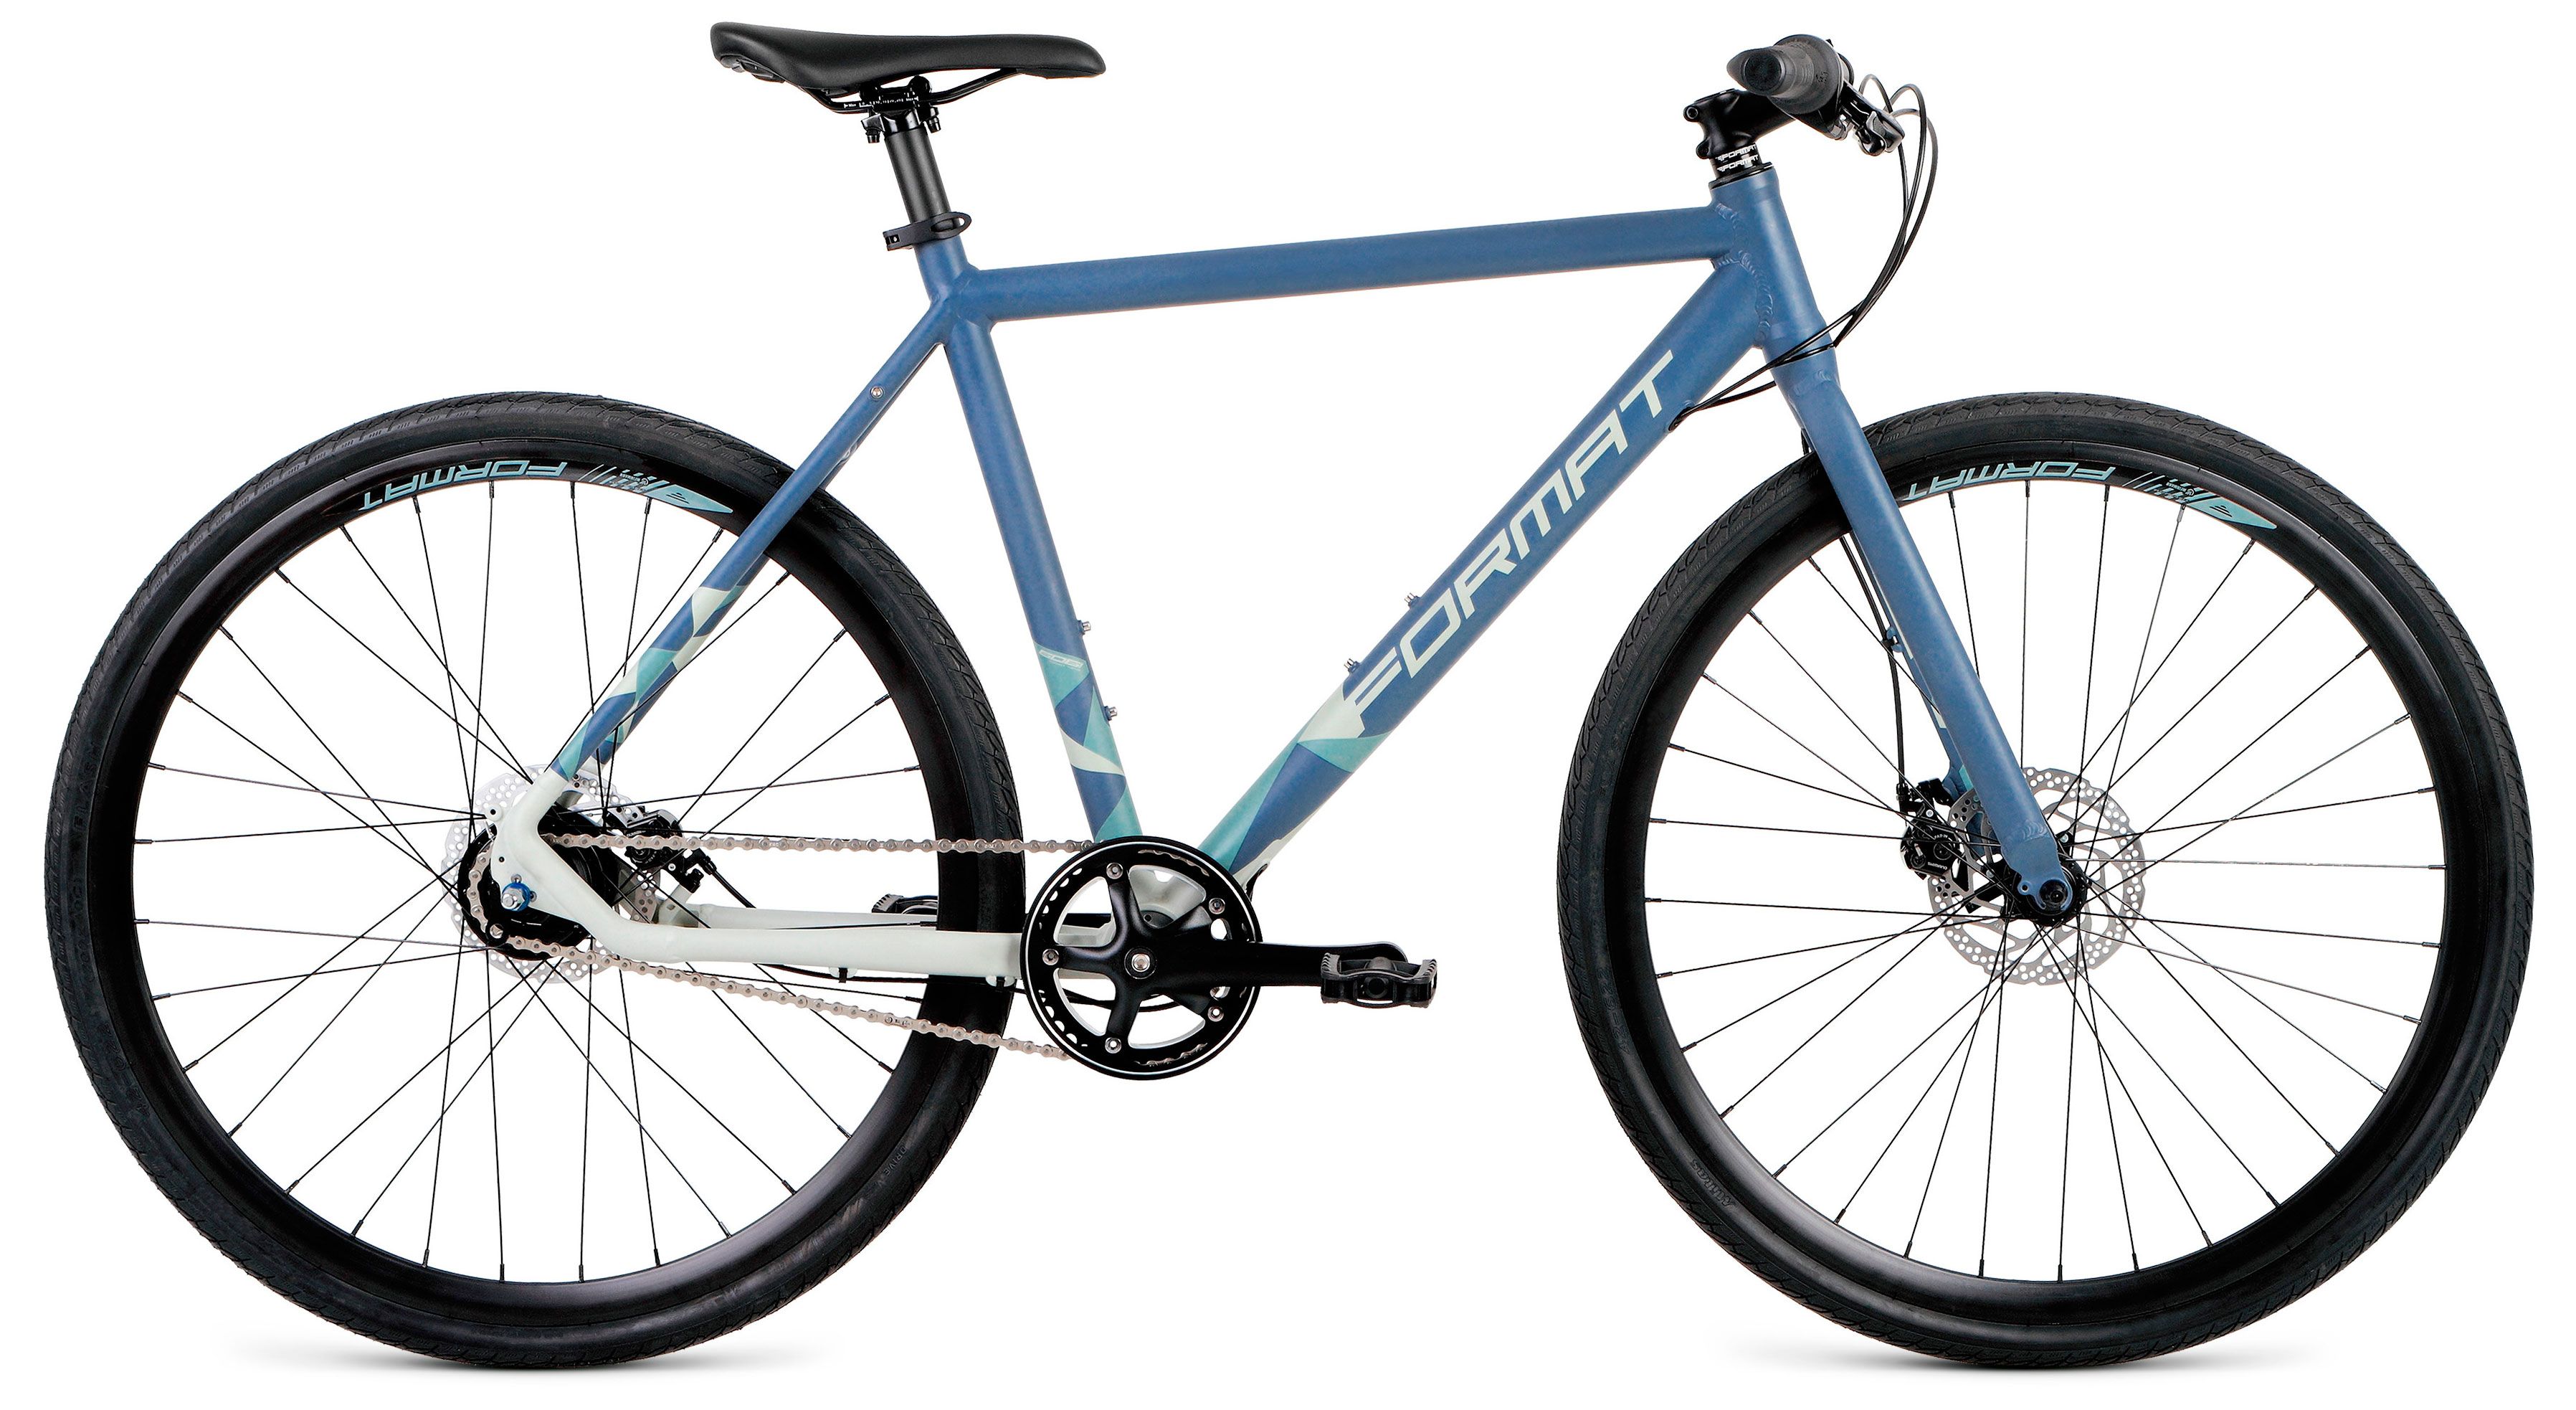  Велосипед Format 5341 2018